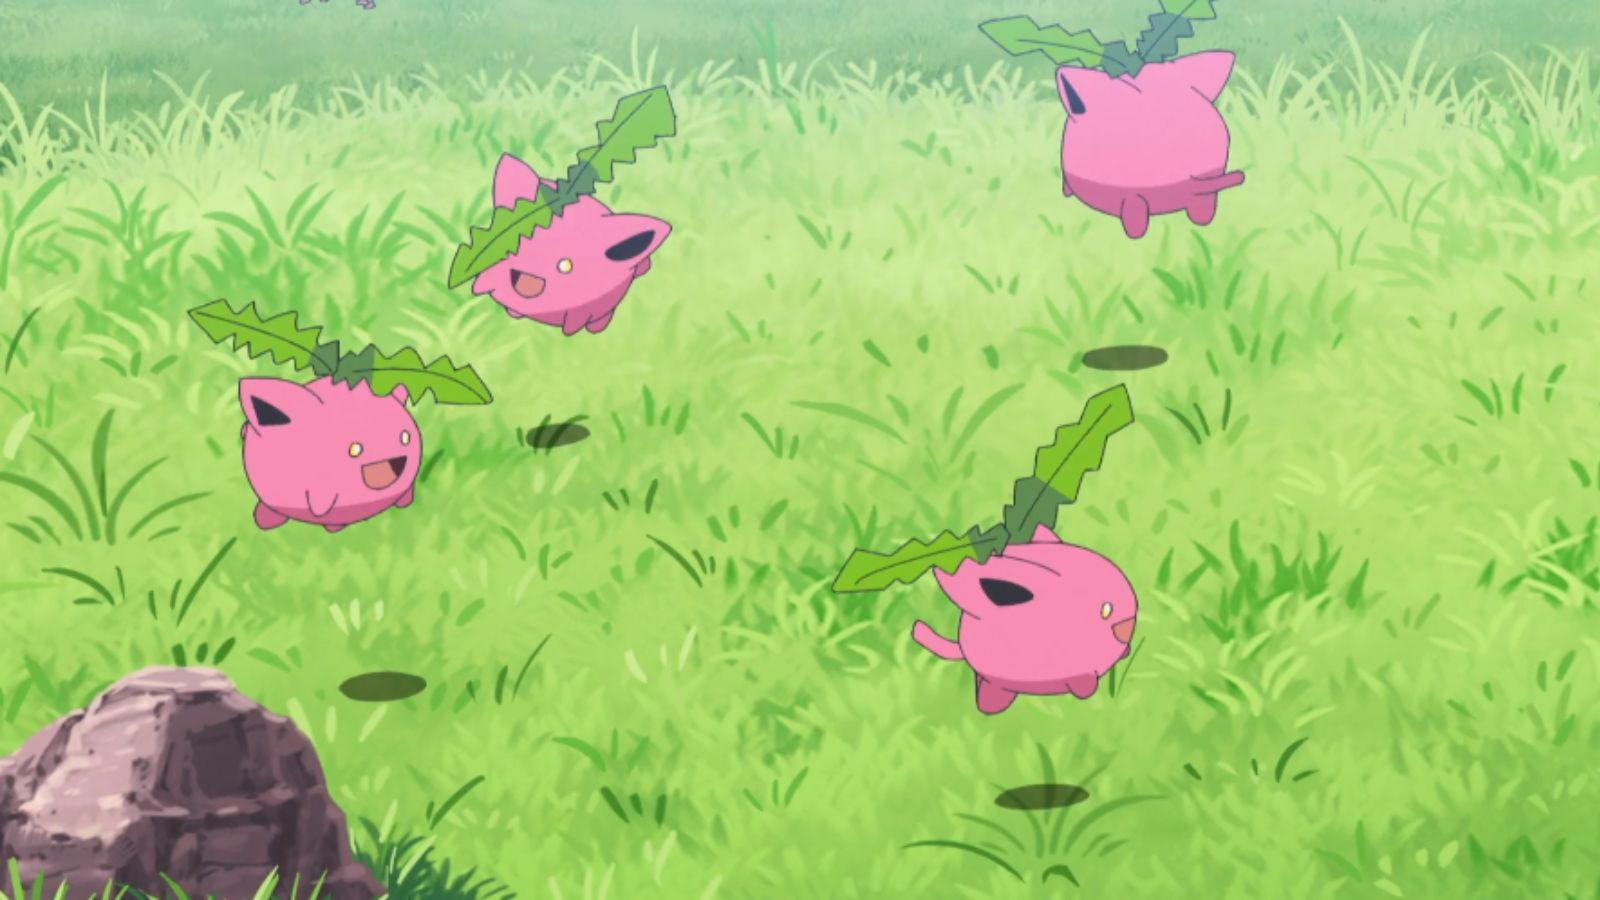 Hoppip from Pokemon anime.